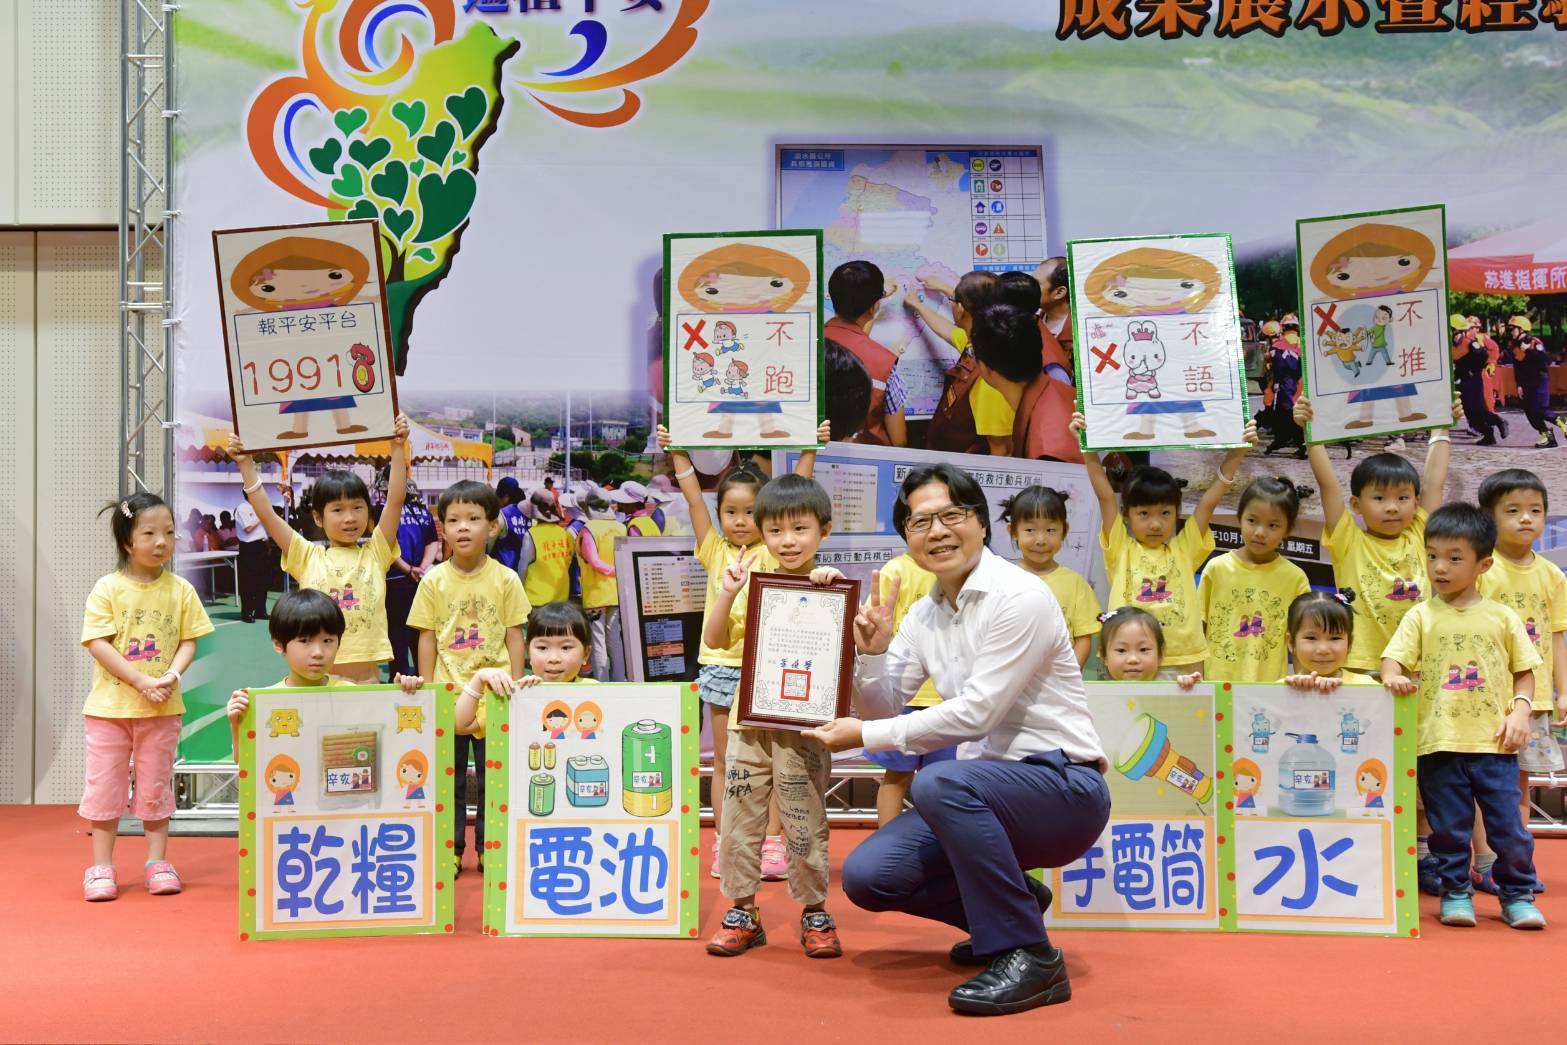 部長葉俊榮與開場表演「地震我不怕」舞蹈的幼童合影